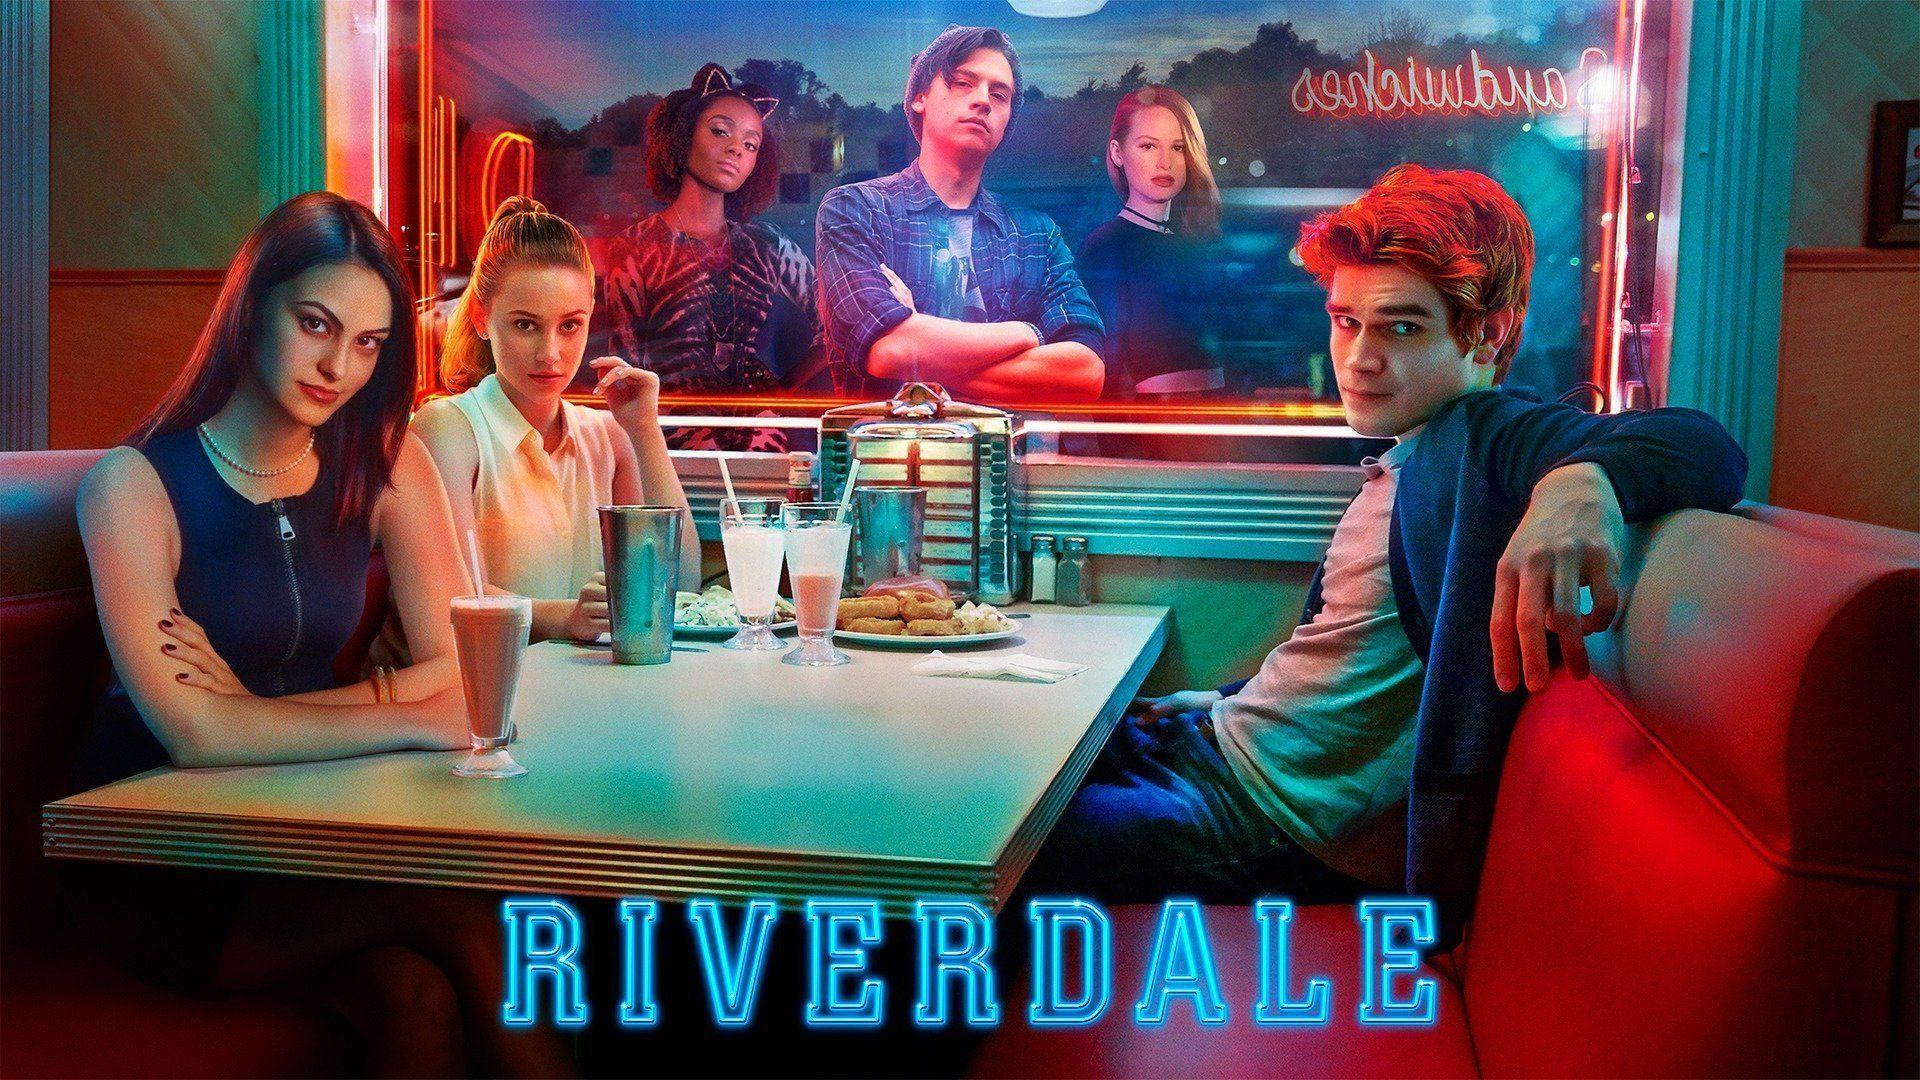 Riverdale Wallpaper Free Riverdale Background